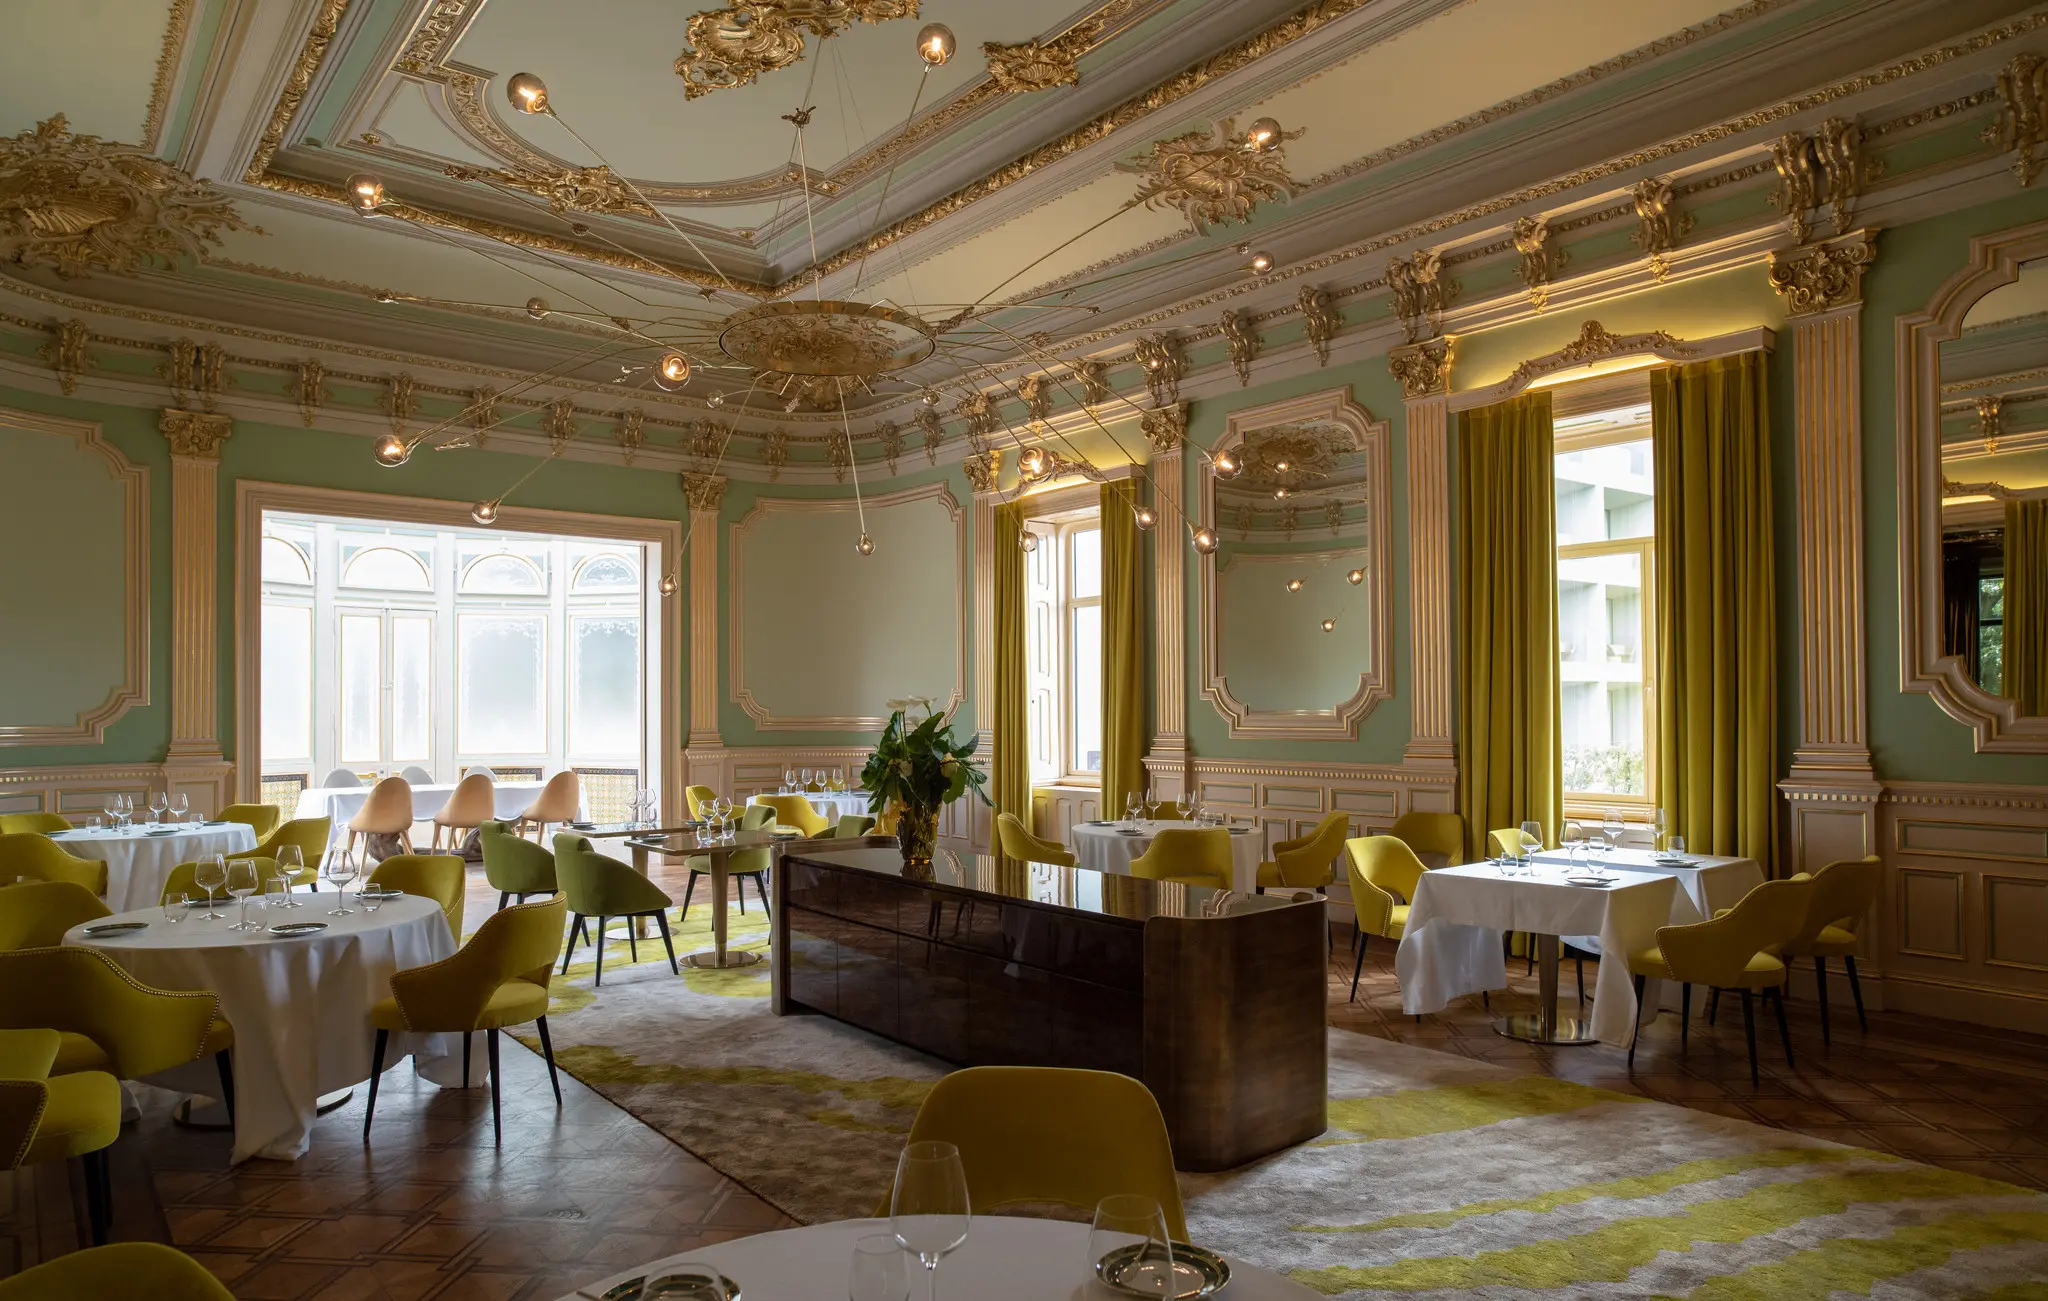 Vila Foz Hotel & Spa: hospedagem em um palácio do século XIX, com toques de modernidade